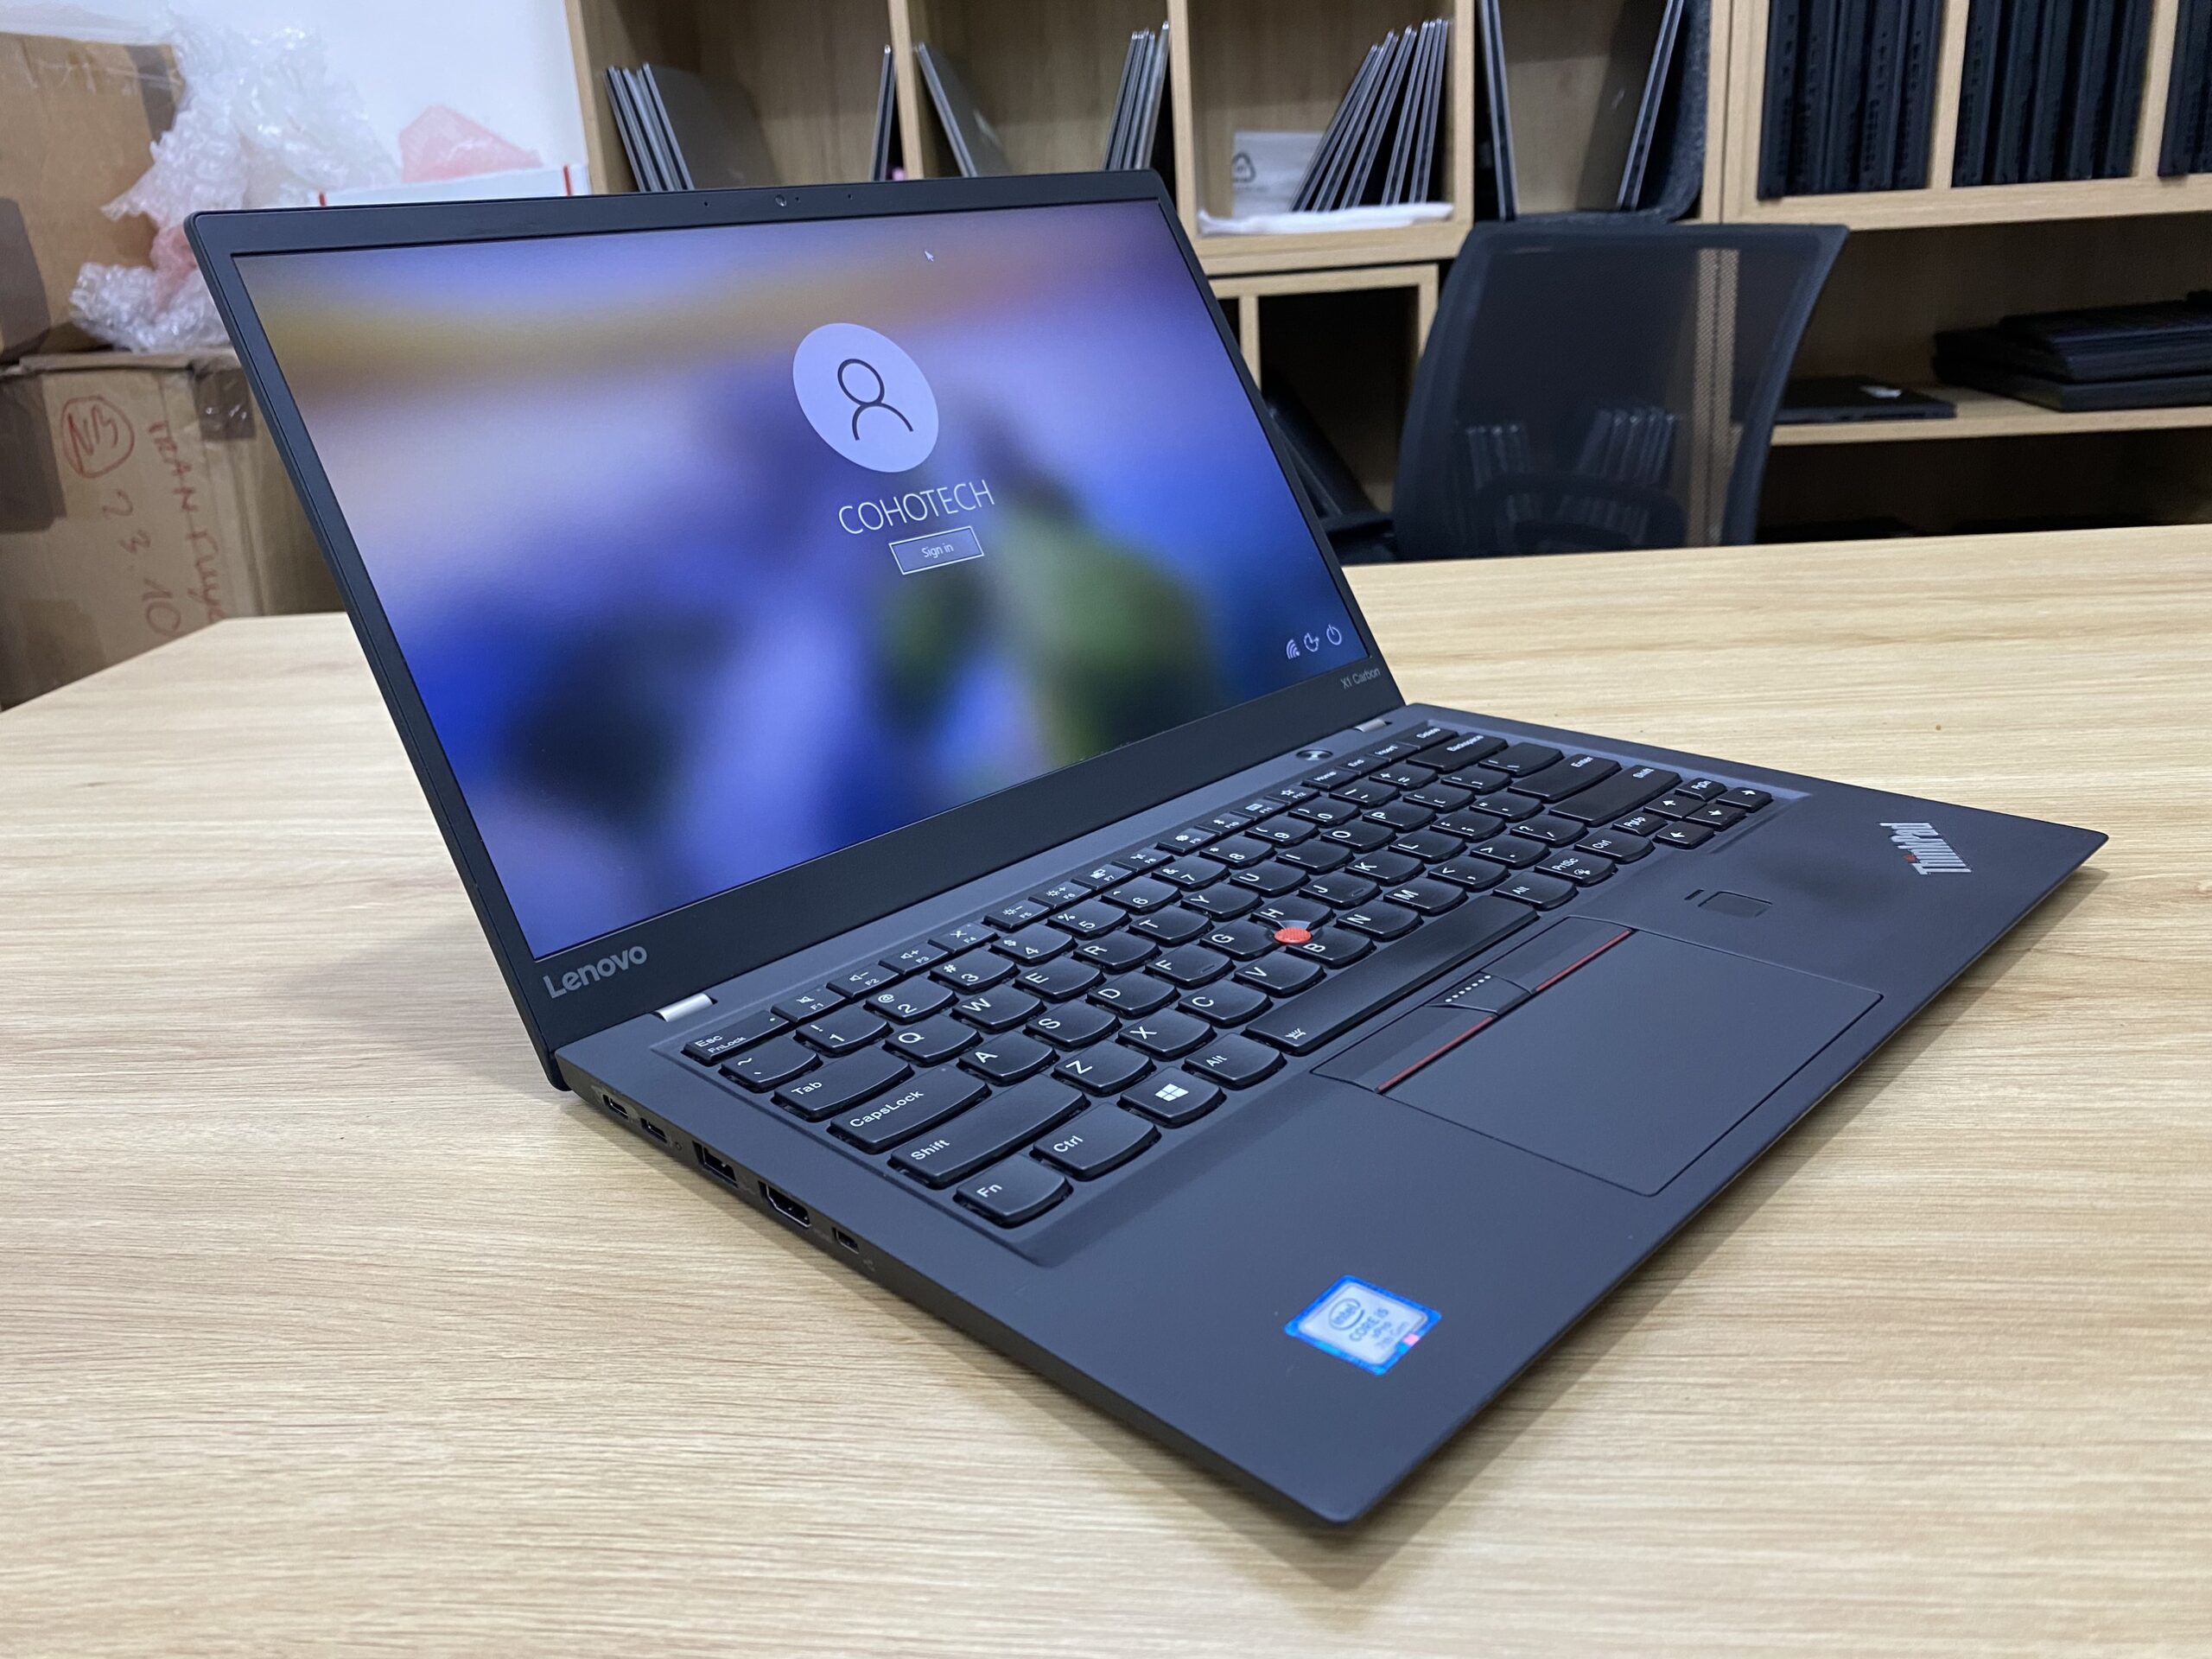 ThinkPad X1 Carbon Gen5 i5 8GB 256GB